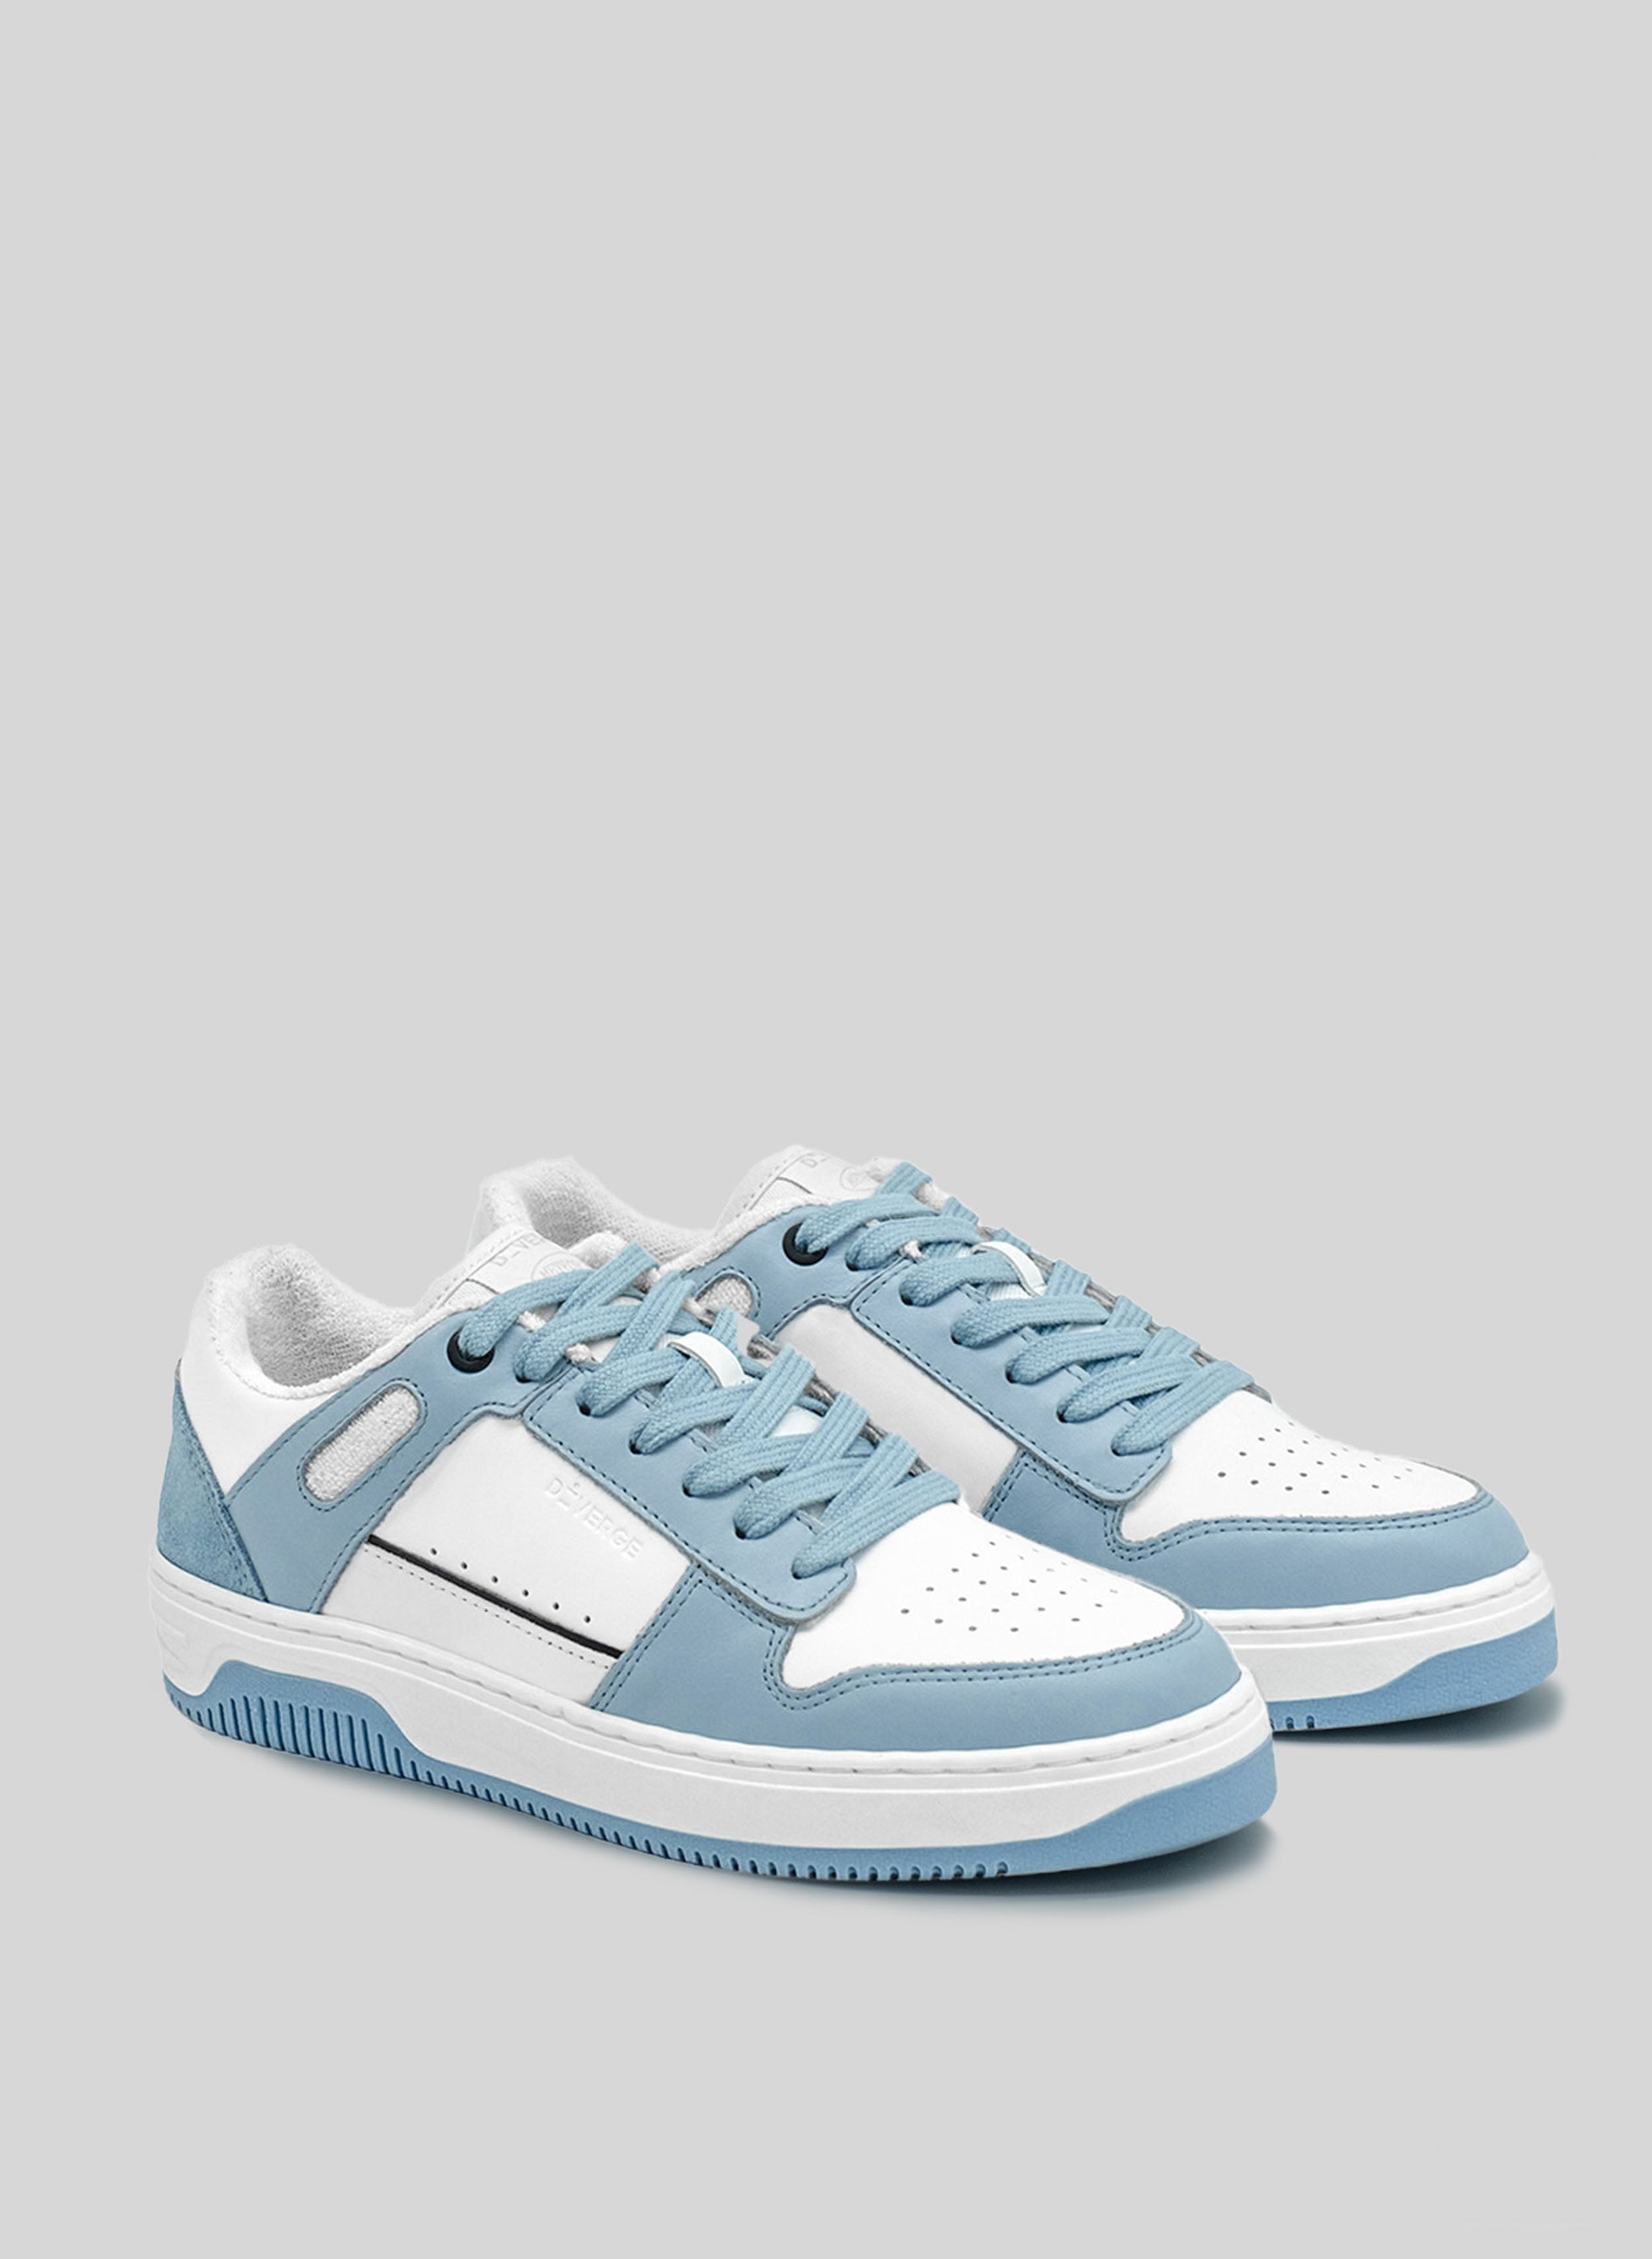 sneakers blu con suola bianca e blu di Diverge, che promuove l'impatto sociale e le scarpe personalizzate attraverso il progetto imagine. 